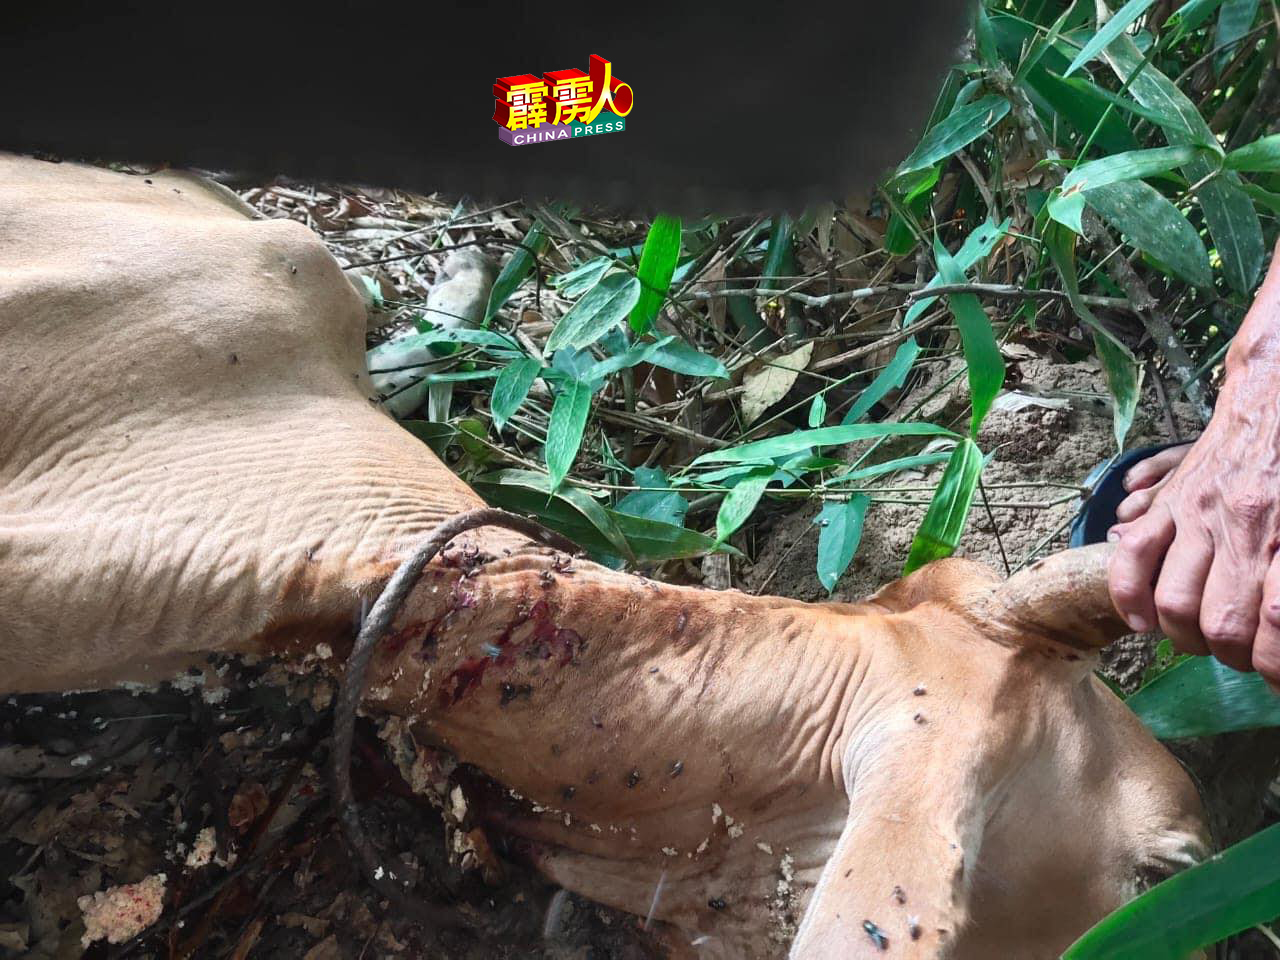 位于玲珑甘榜仄坡于5日发现有一隻被猛兽攻击的牛尸，表面有噬咬及抓伤的痕迹。